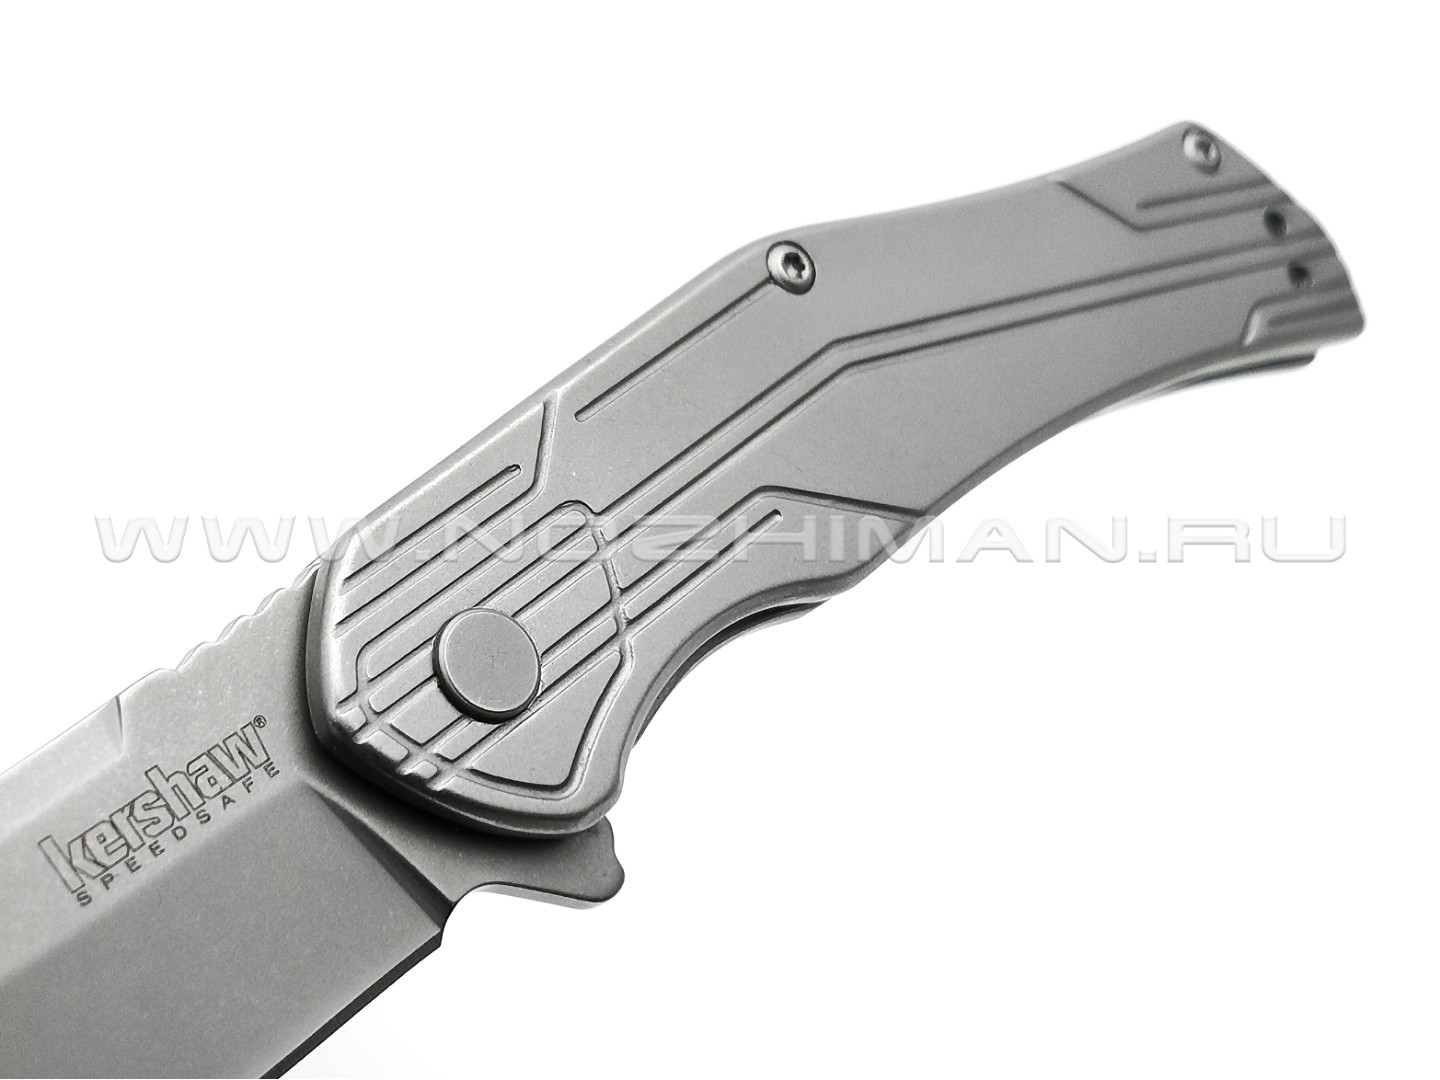 Нож Kershaw Husker 1380 сталь 8Cr13MoV рукоять Stainless steel